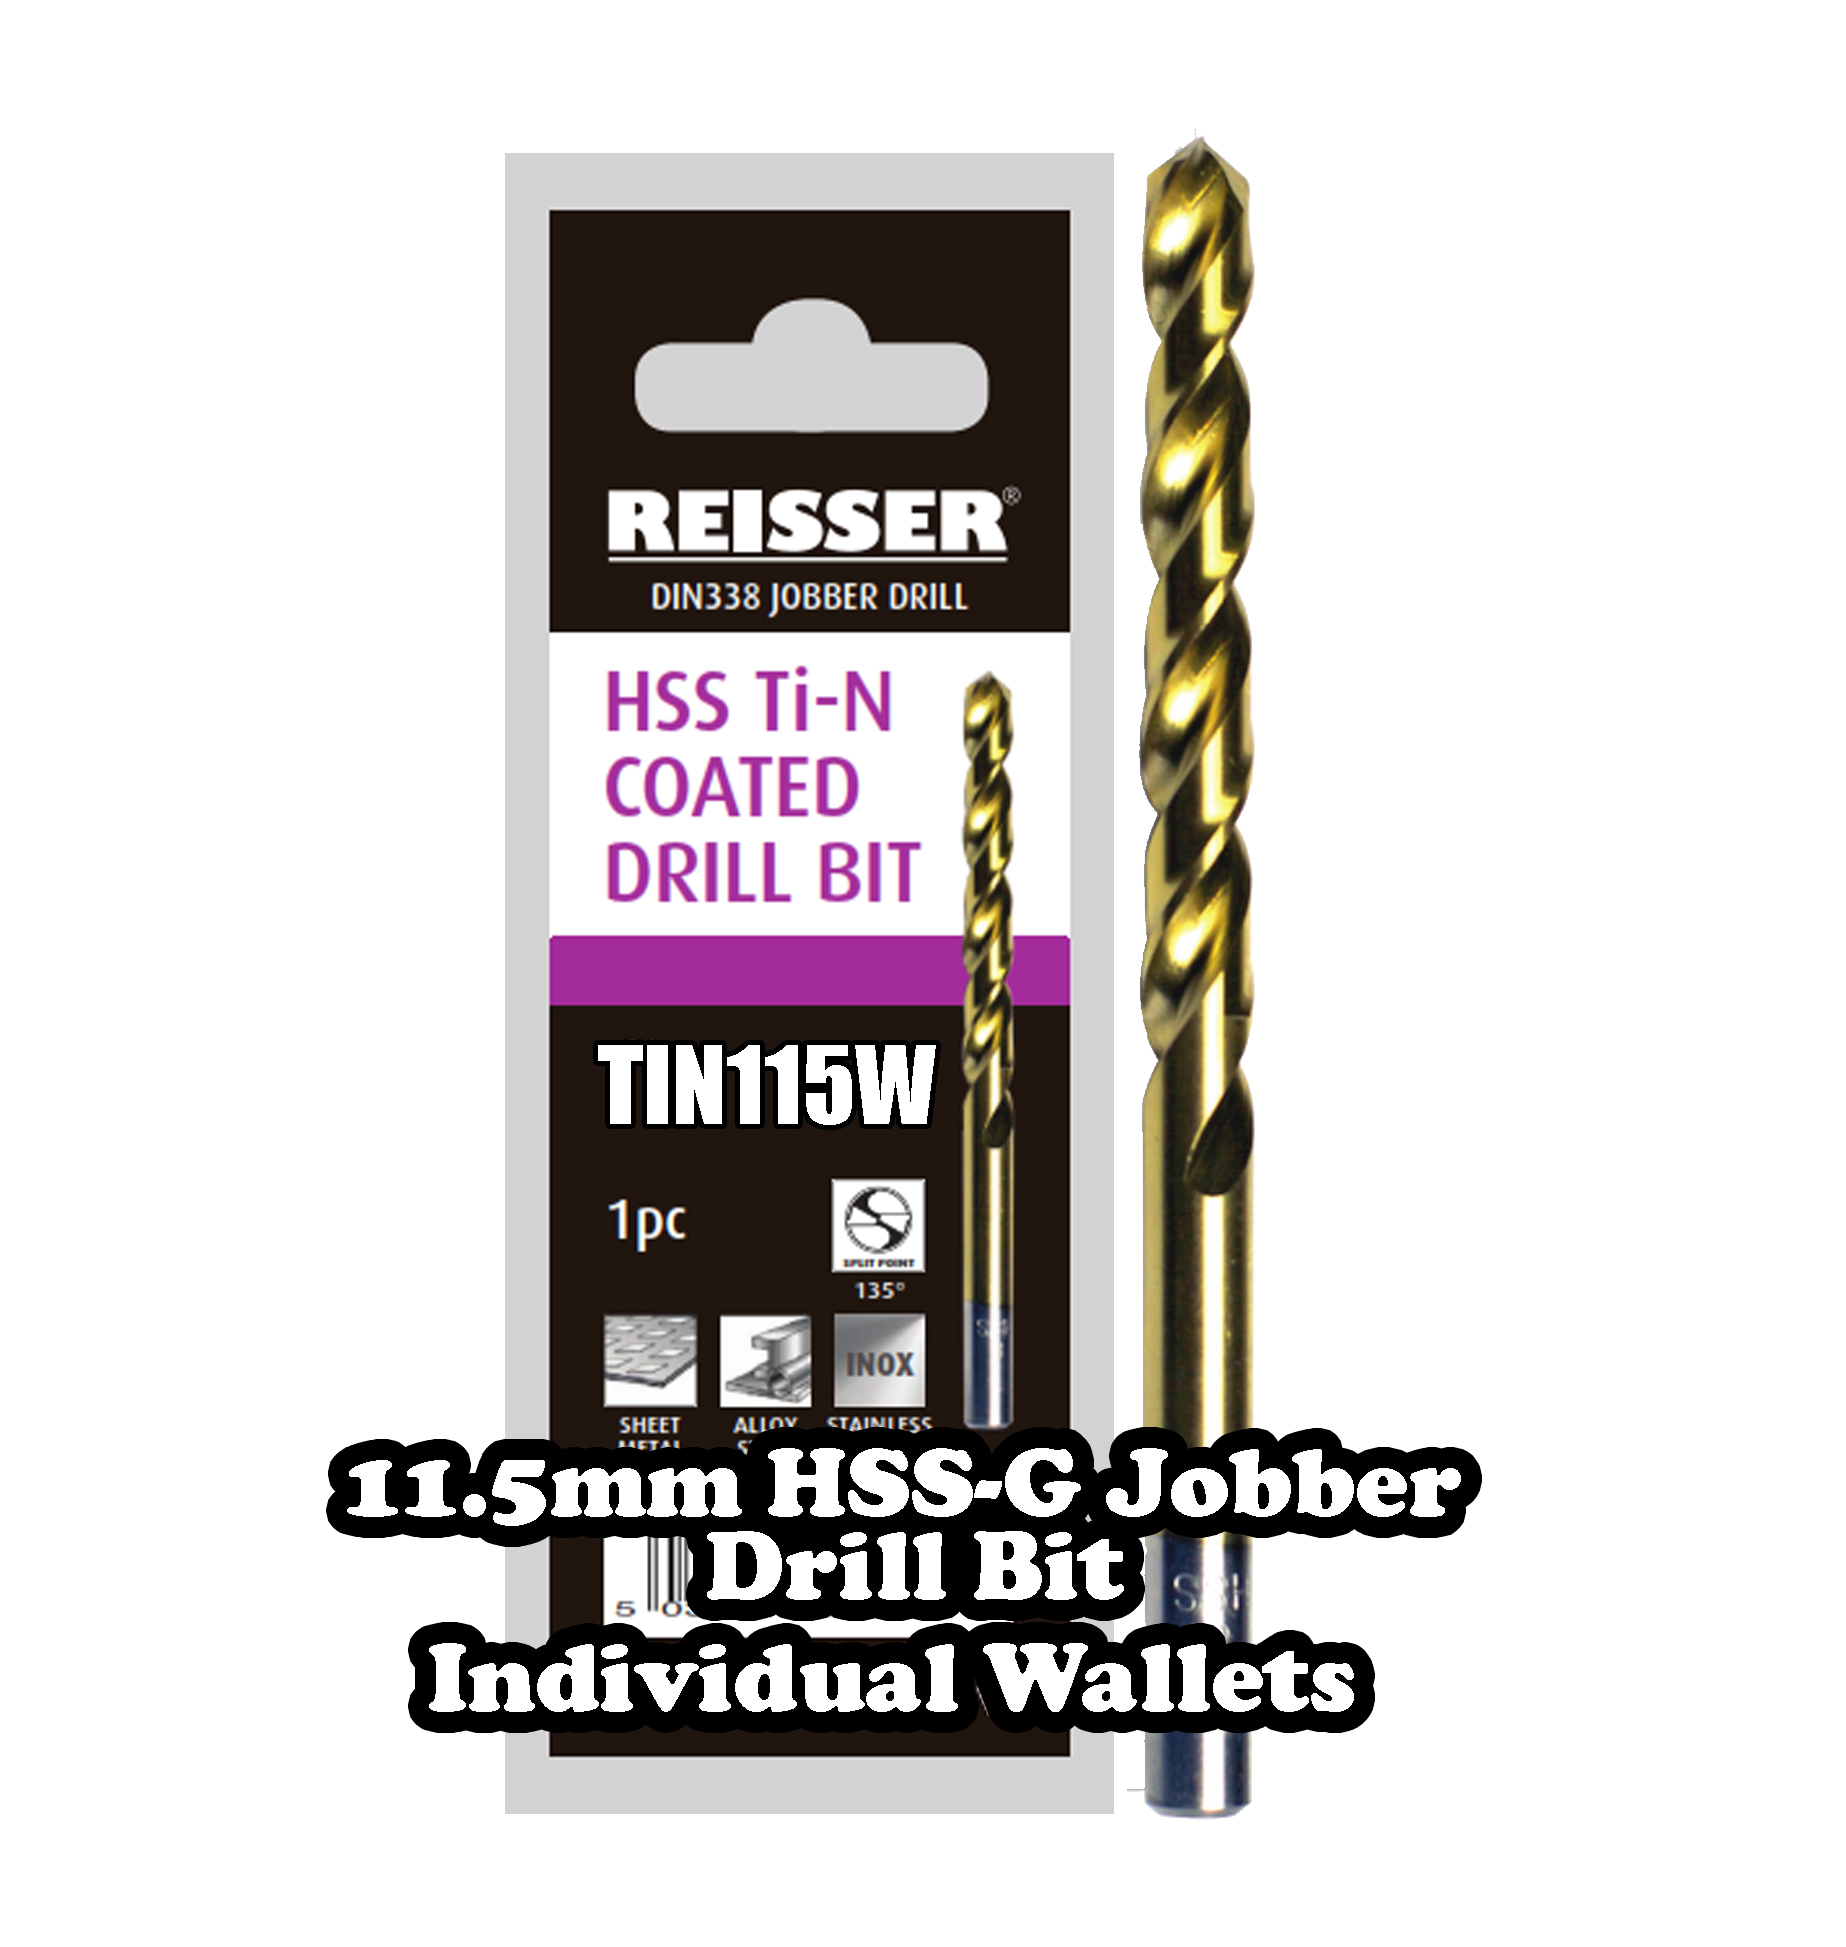 11.5mm HSS Jobber Drill Bit (SINGLE WALLET)